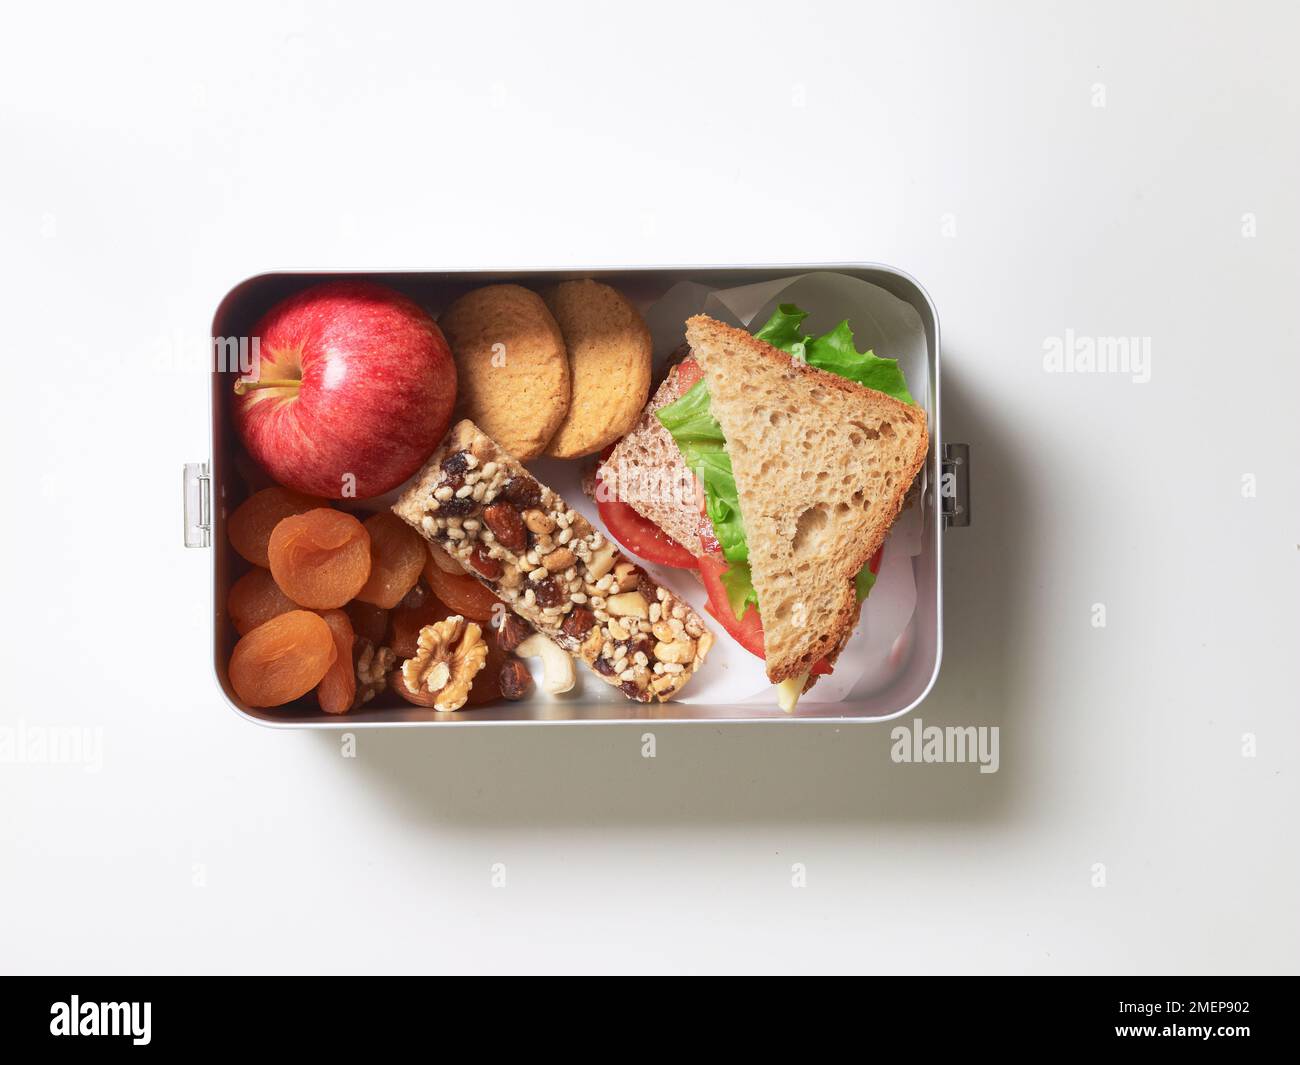 Pranzo al sacco senza glutine con sandwich di lattuga e pomodoro, frutta e noci, biscotti e mela fresca, vista dall'alto Foto Stock